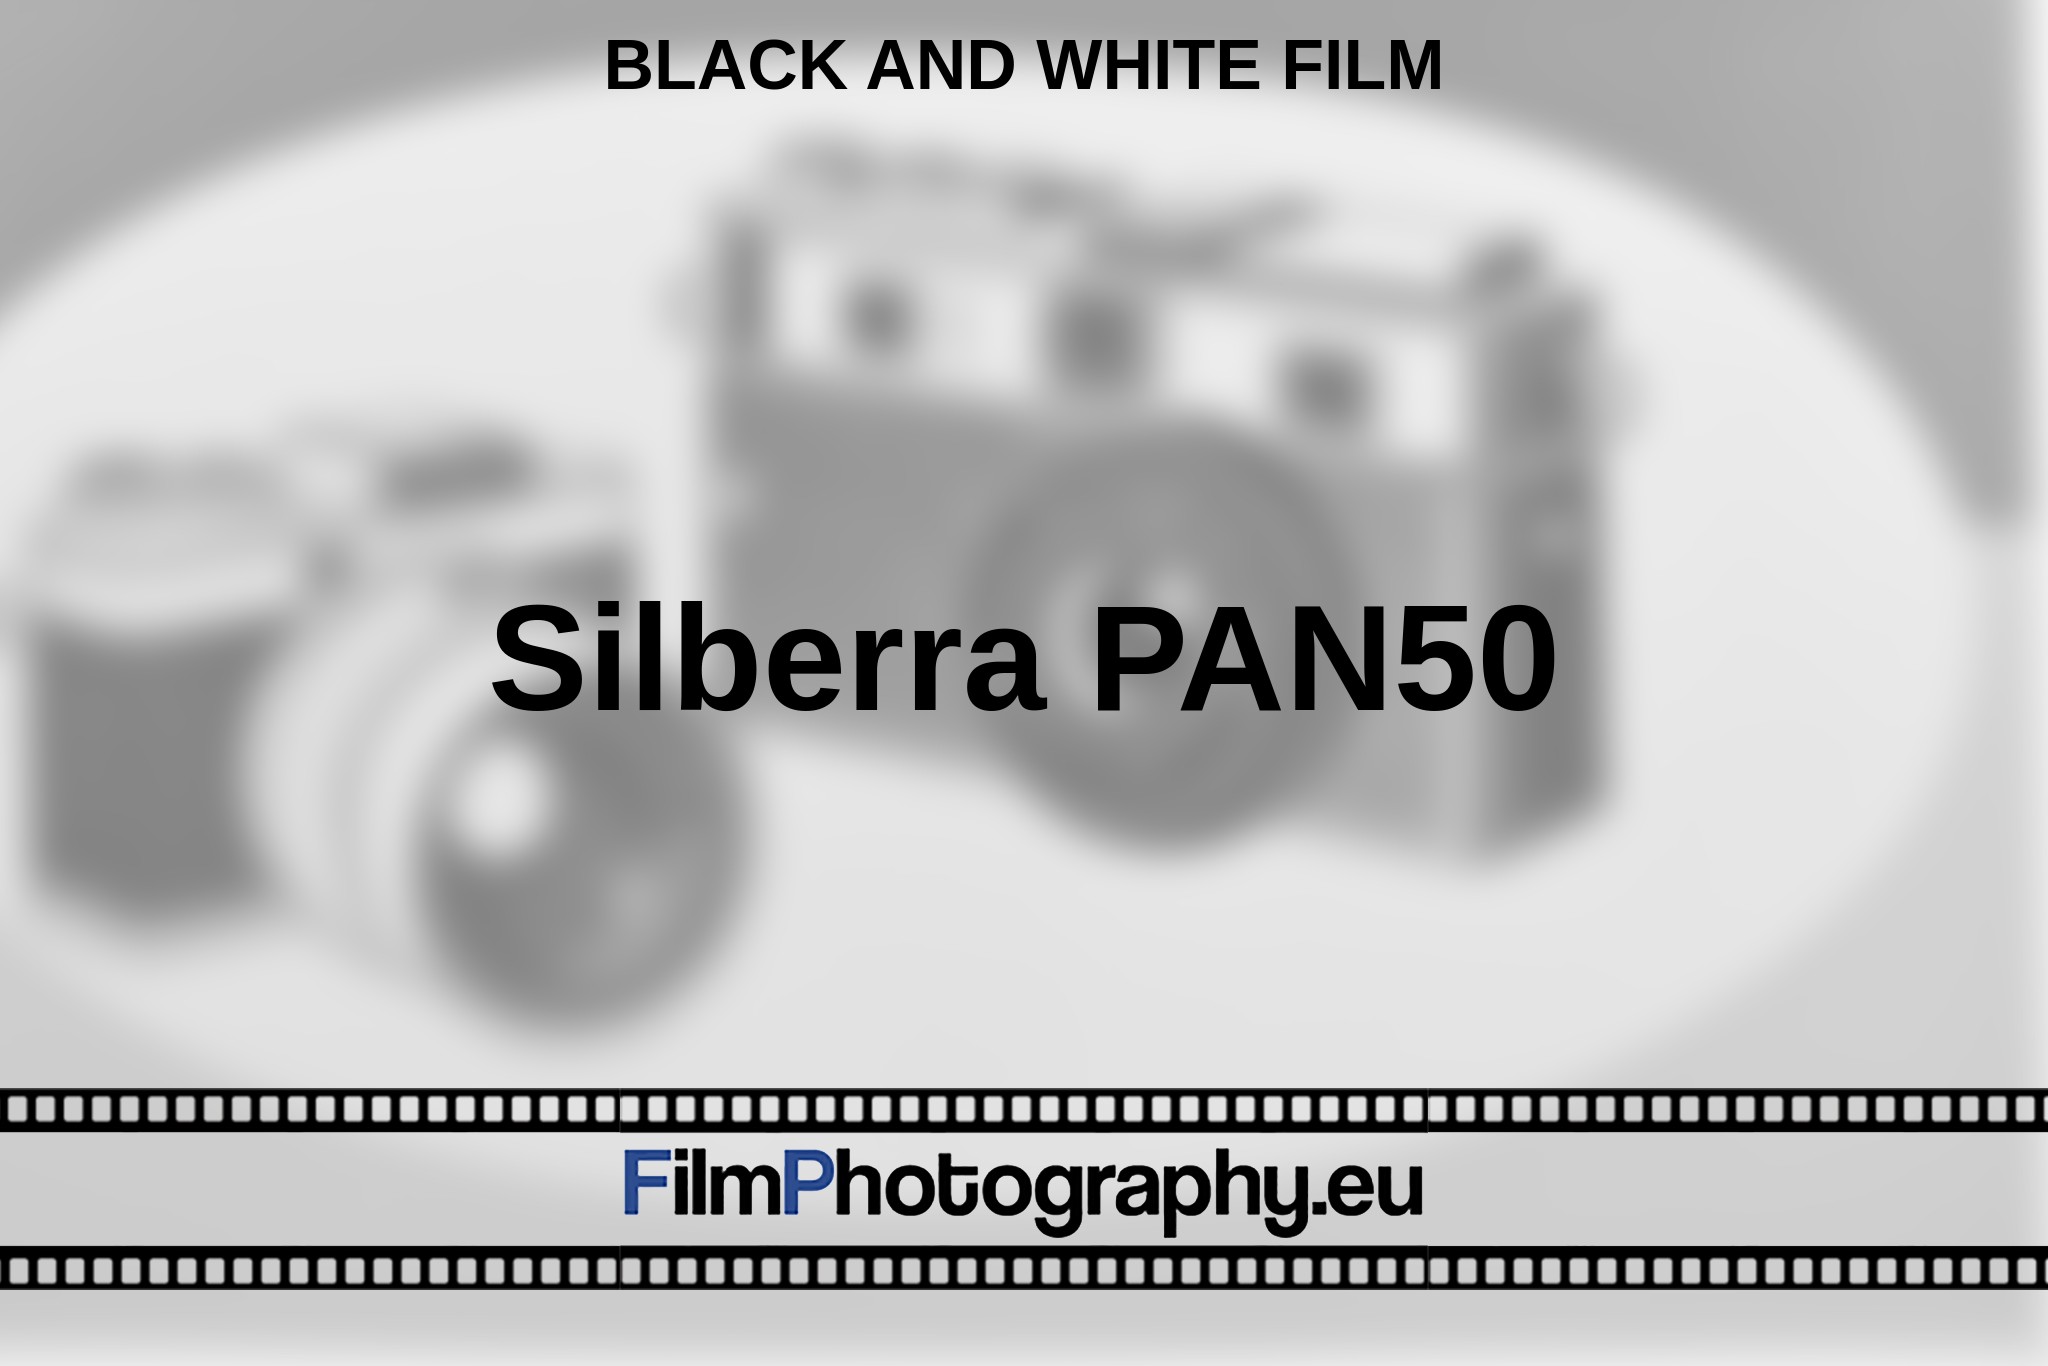 silberra-pan50-black-and-white-film-en-bnv.jpg